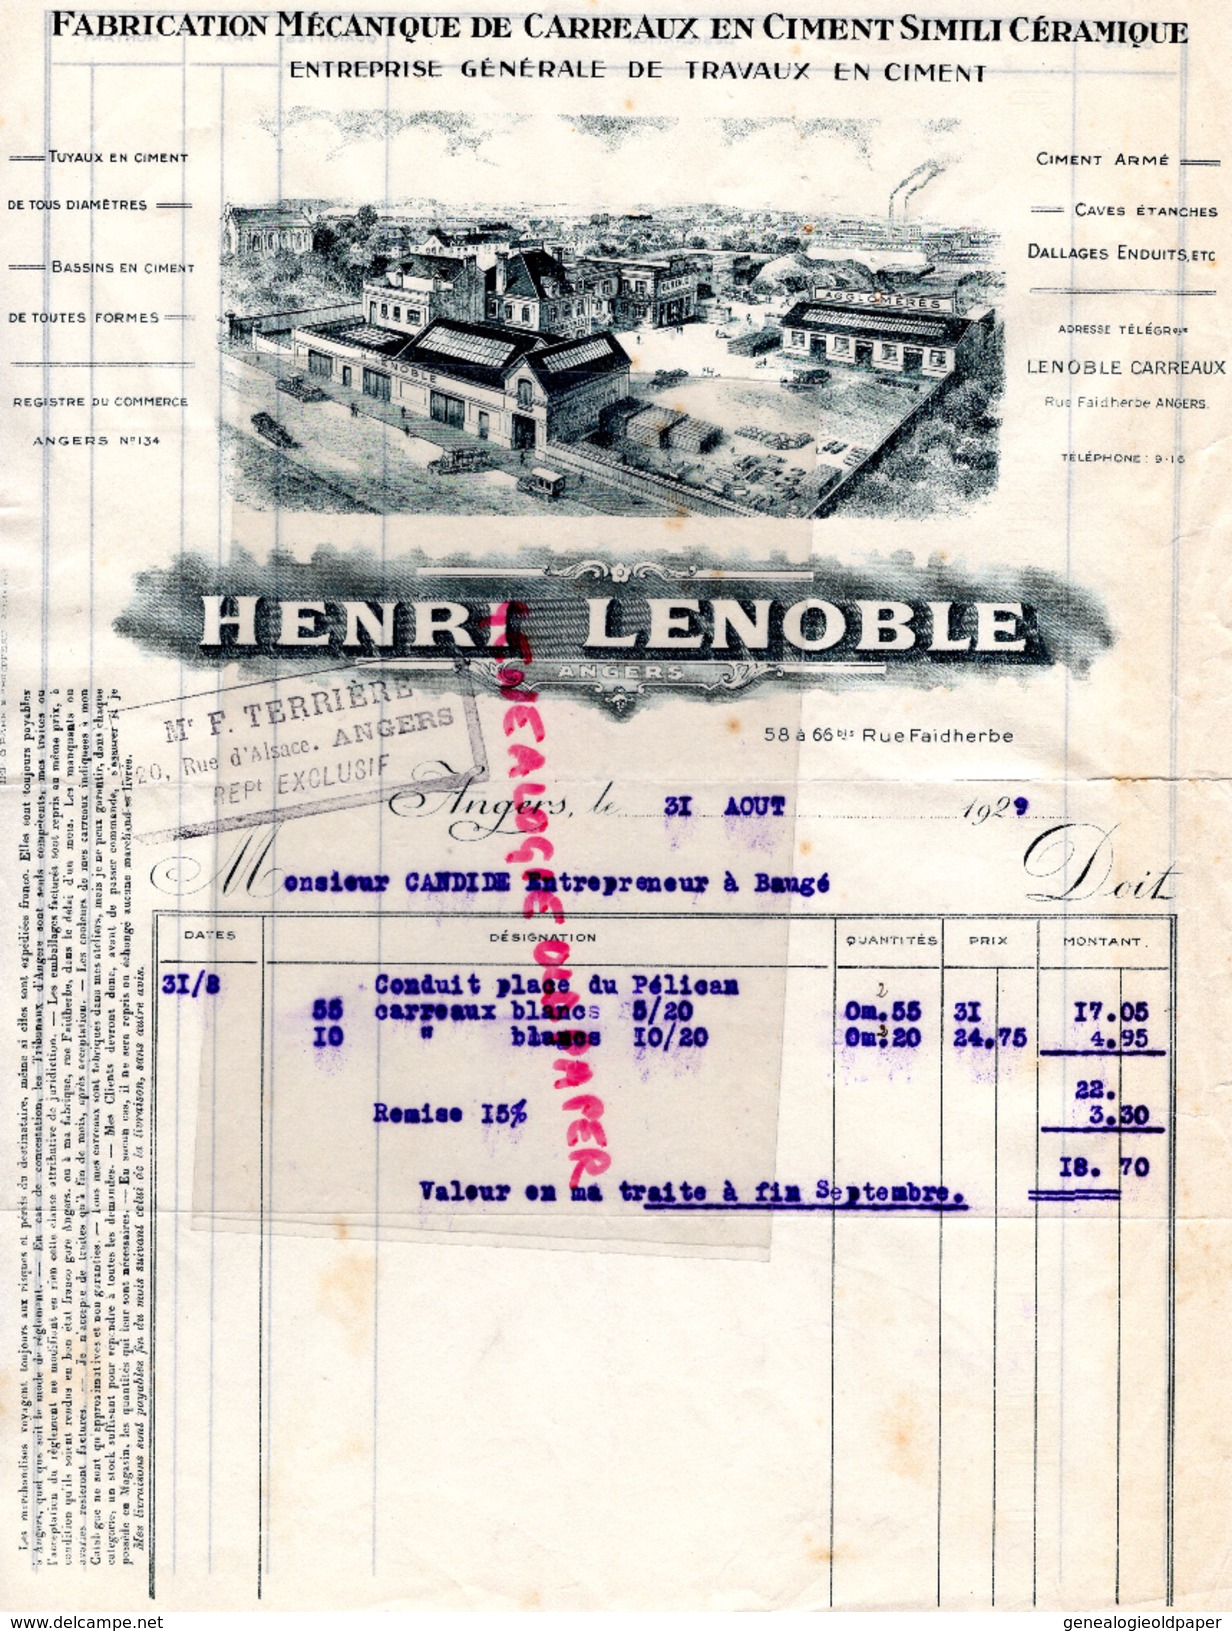 49- ANGERS-LETTRE FACTURE HENRI LENOBLE-FABRIQUE MECANIQUE CARREAUX CIMENT SIMILI CERAMIQUE- A M. CANDIDE A BAUGE-1929 - Petits Métiers